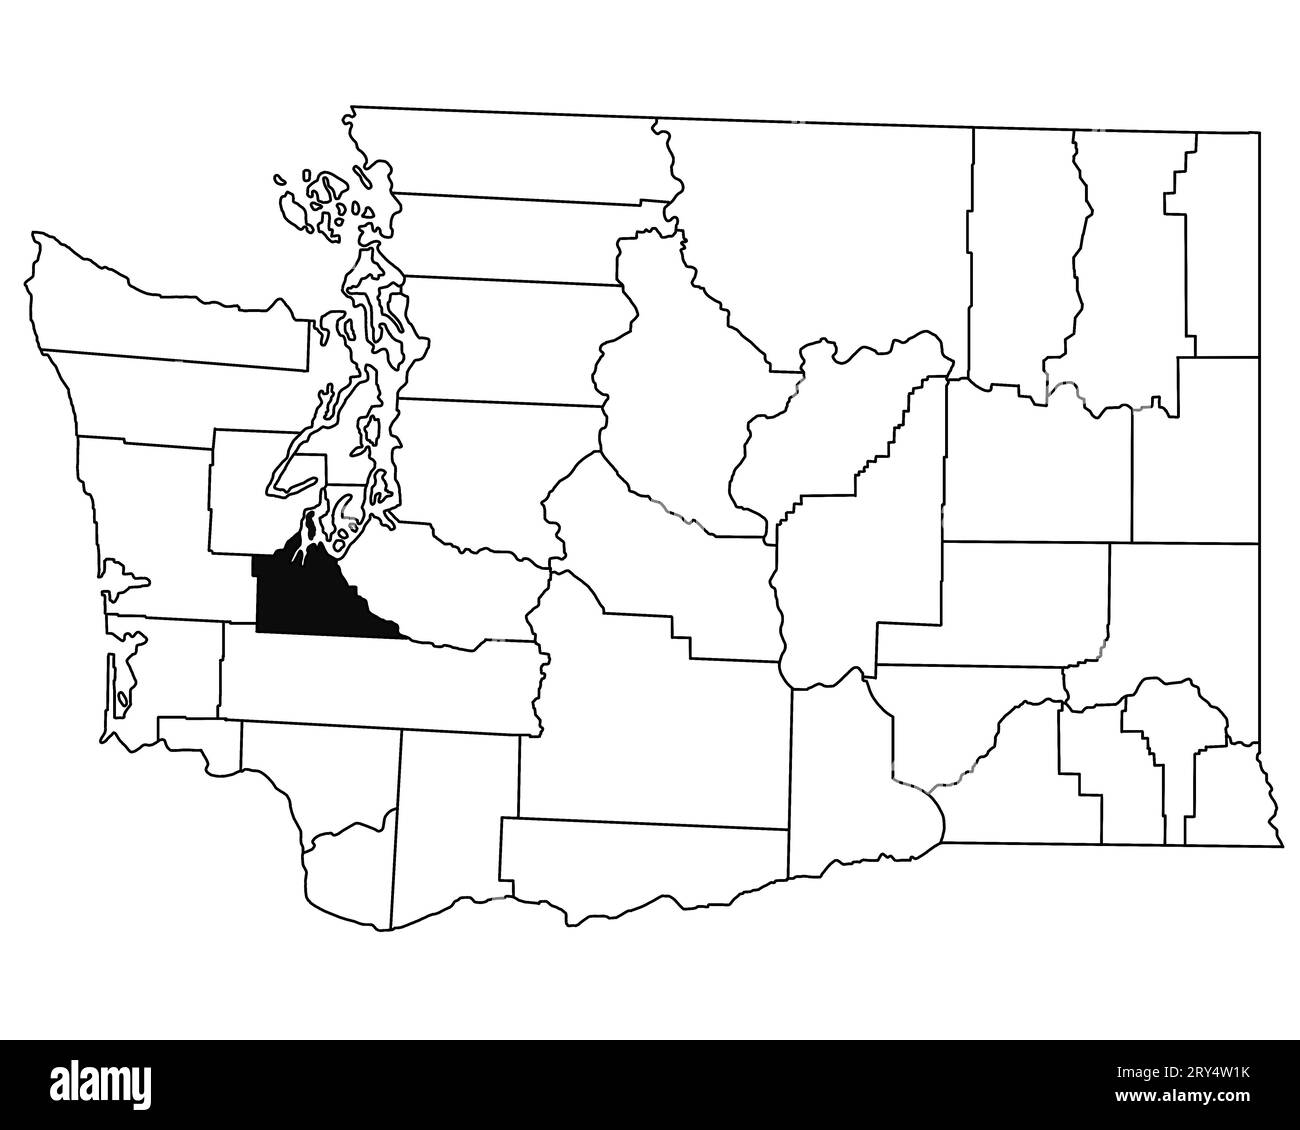 Carte du comté de Thurston dans l'état de Washington DC sur fond blanc. Carte de Single County surlignée en noir sur la carte DE WASHINGTON. ÉTATS-UNIS, ÉTATS-UNIS Banque D'Images